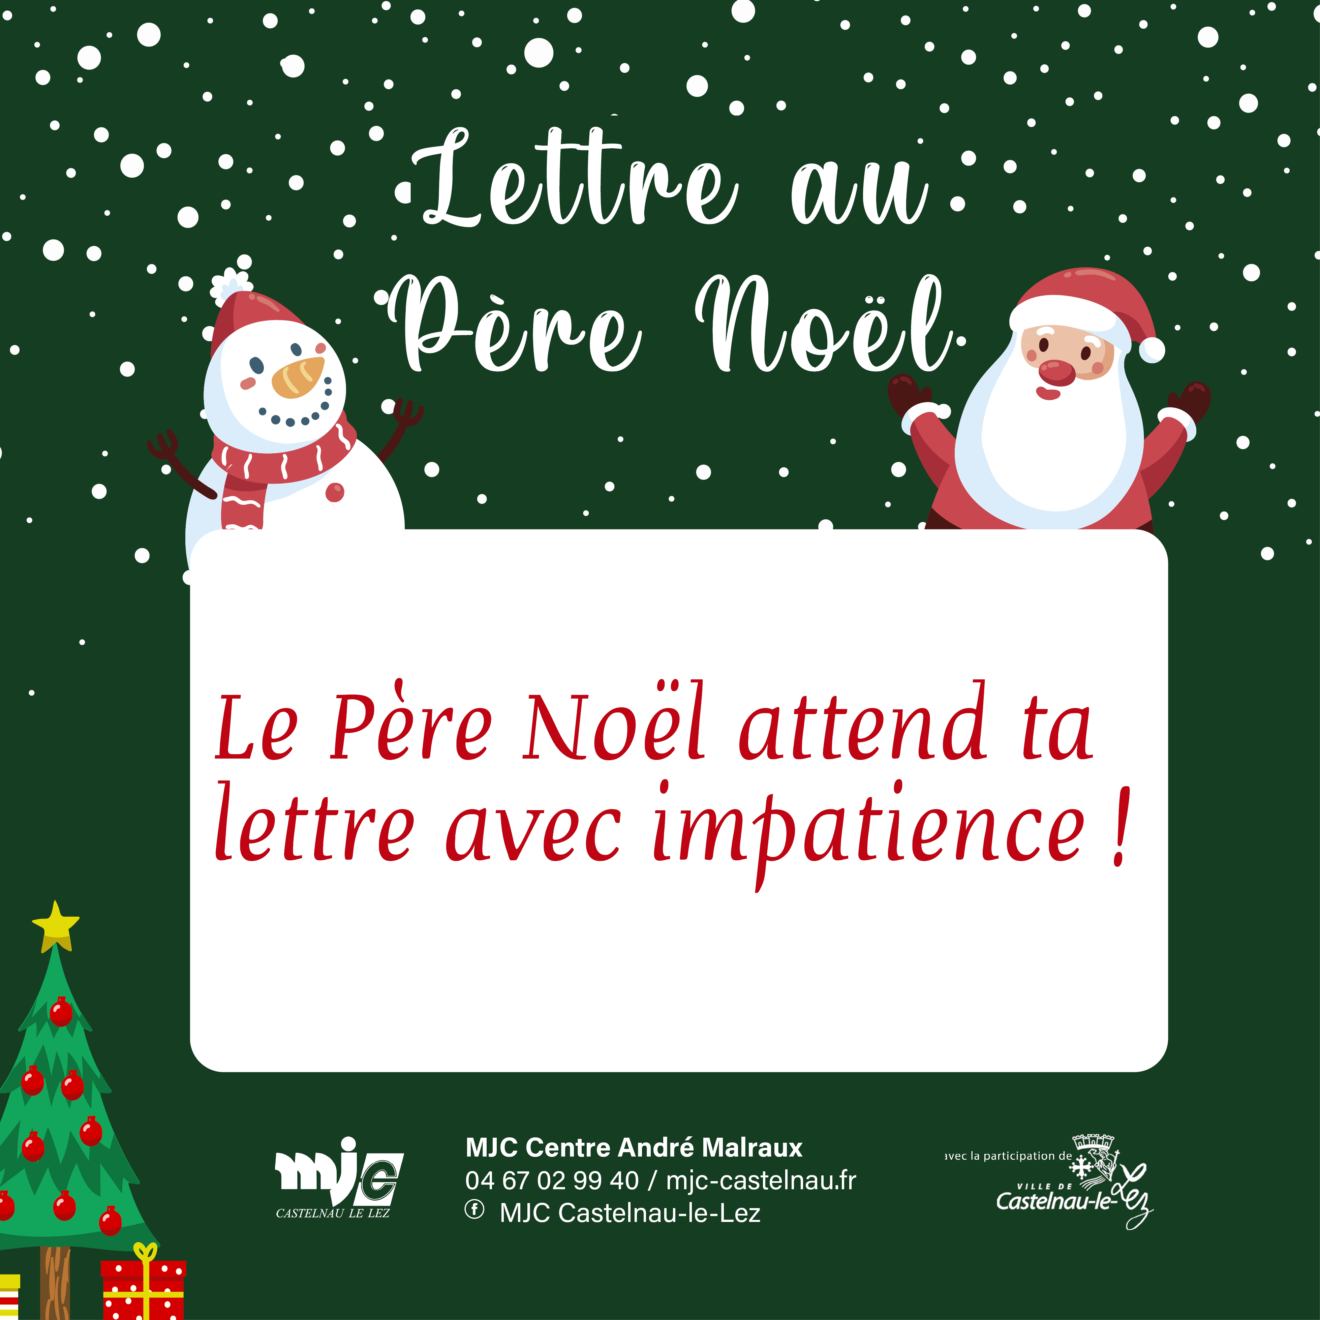 Lettres au Père Noël - MJC Castelnau-le-Lez